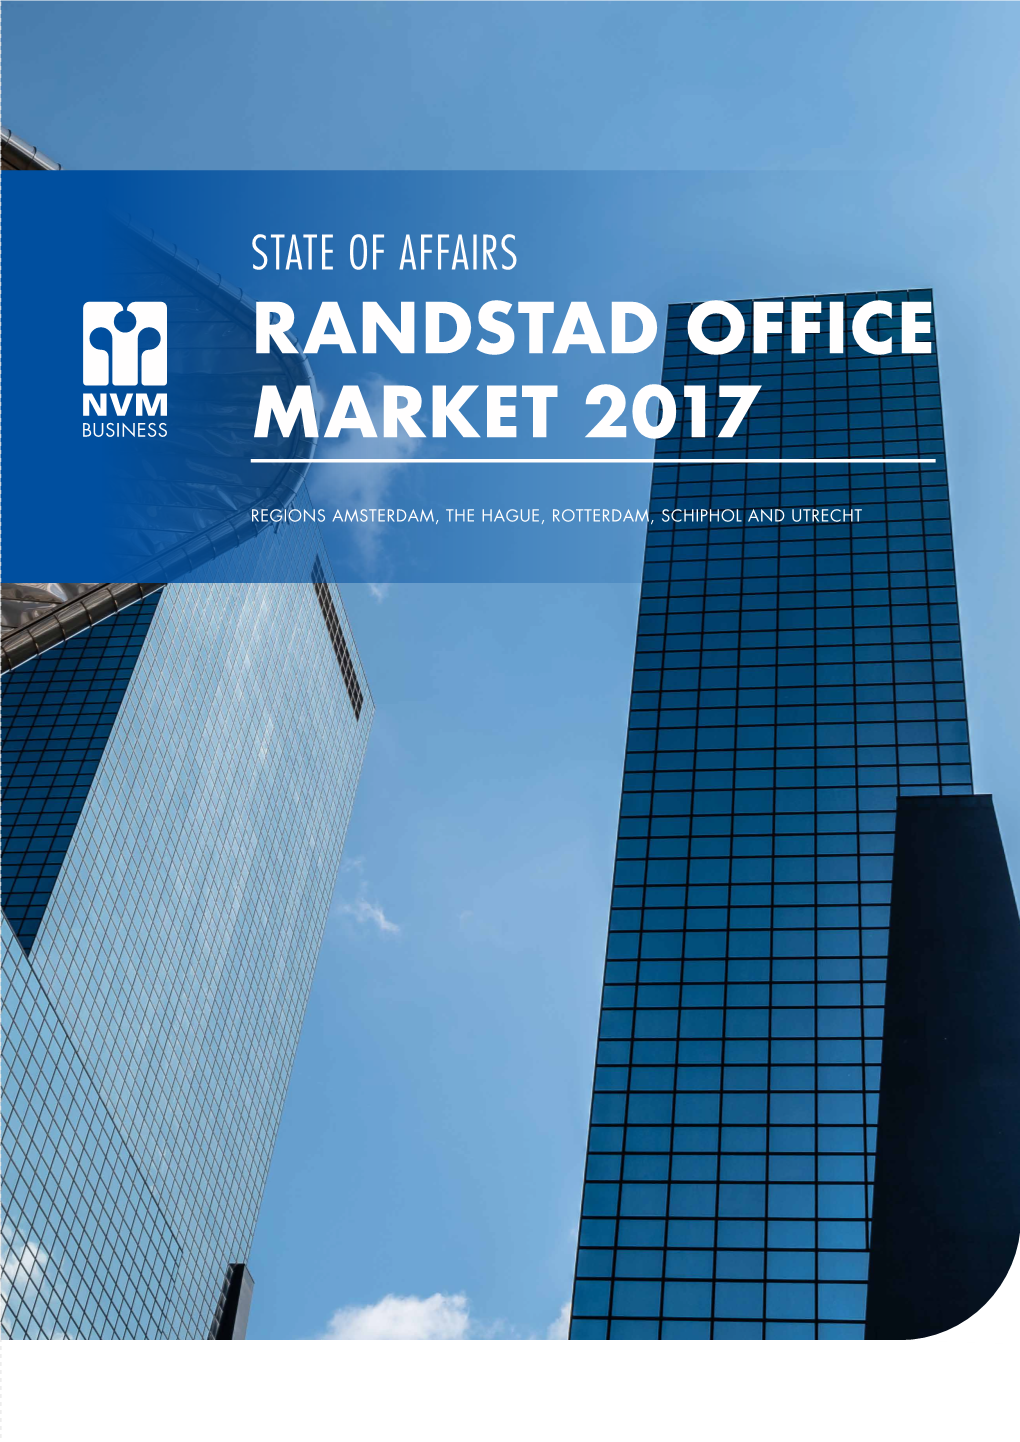 Randstad Office Market 2017